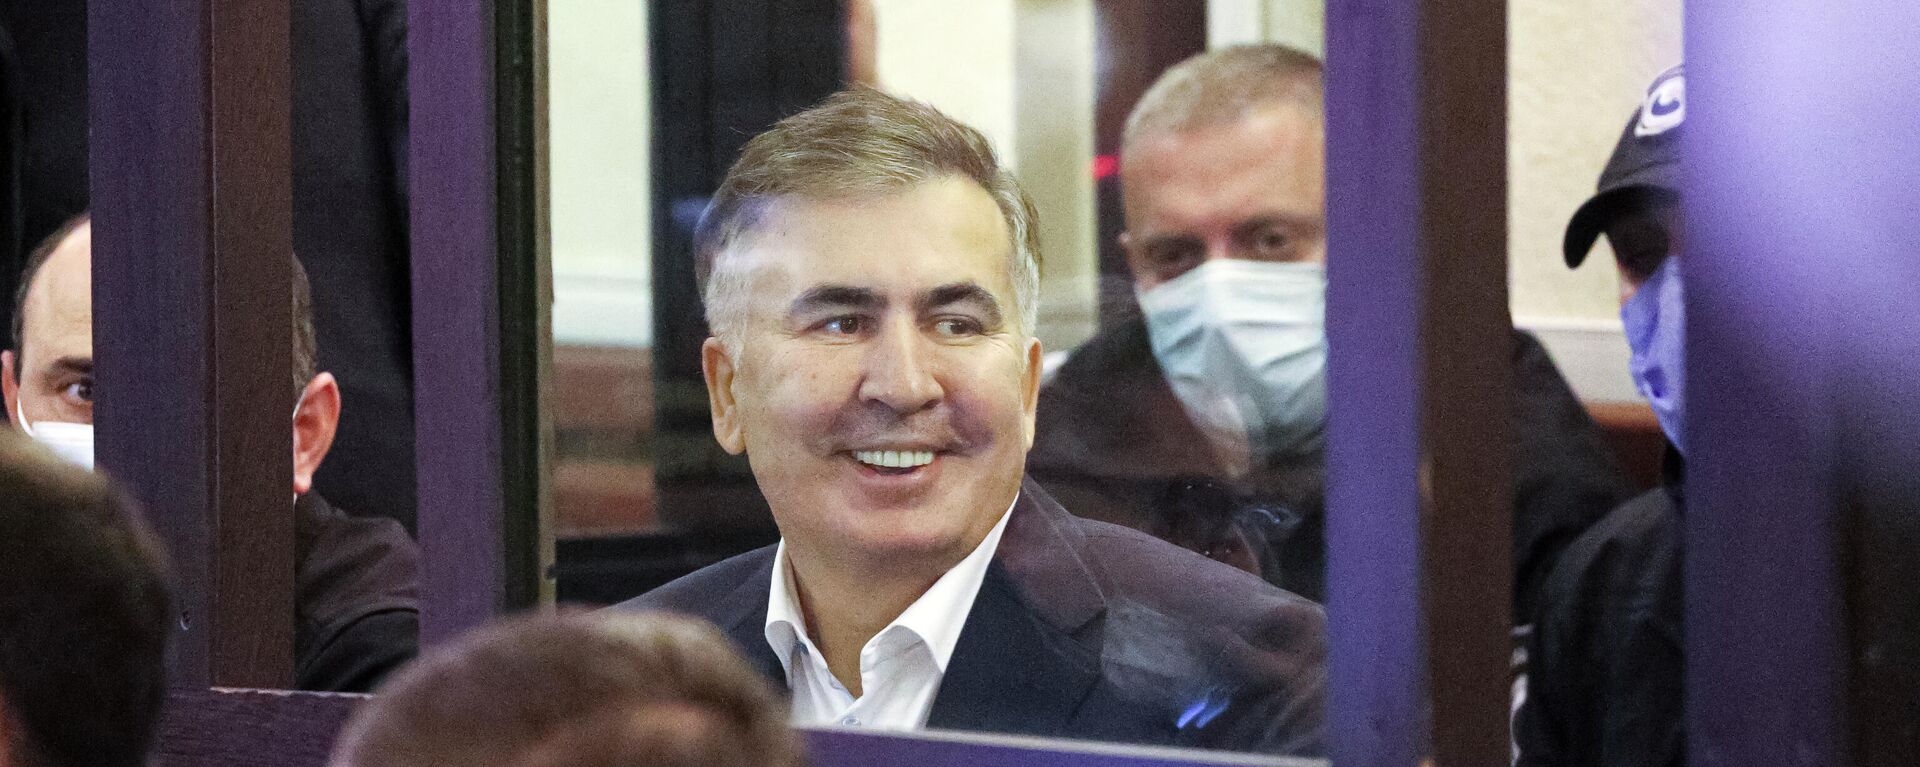 Судебный процесс над Михаилом Саакашвили 29 ноября 2021 года - Sputnik Грузия, 1920, 29.11.2021